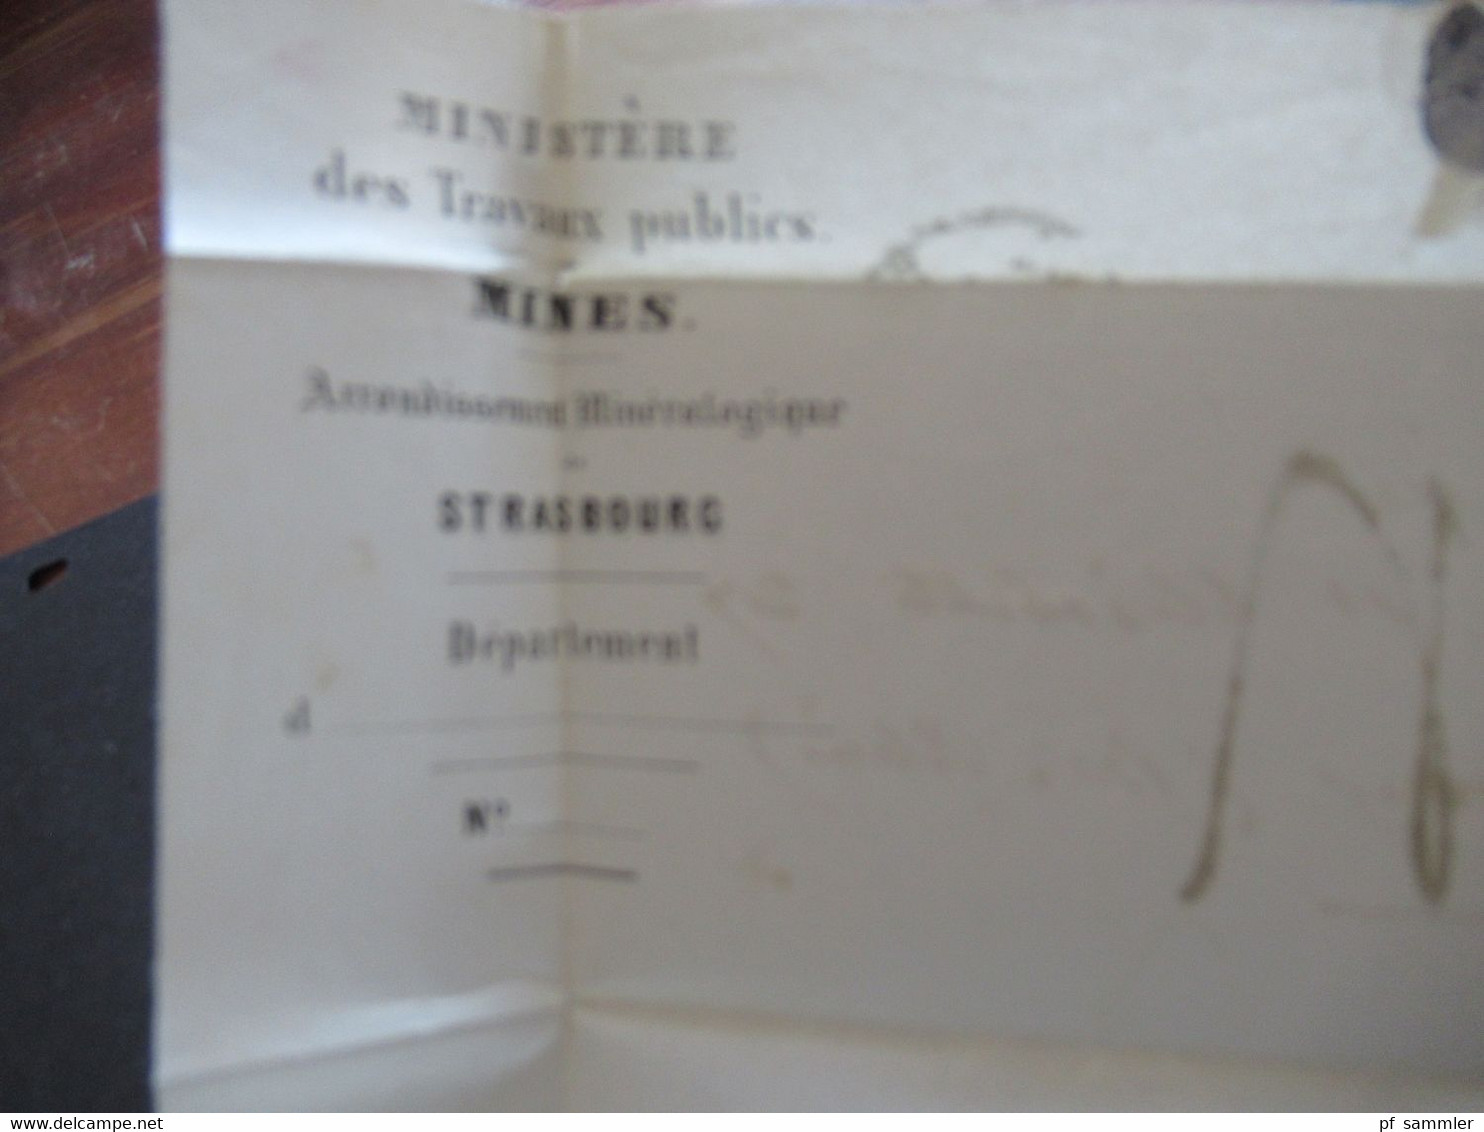 Schweiz 19.10.1854 roter Stempel Suisse Brief ins Elsass Strasbourg Briefpapier Ministere des Travaux publics Mines